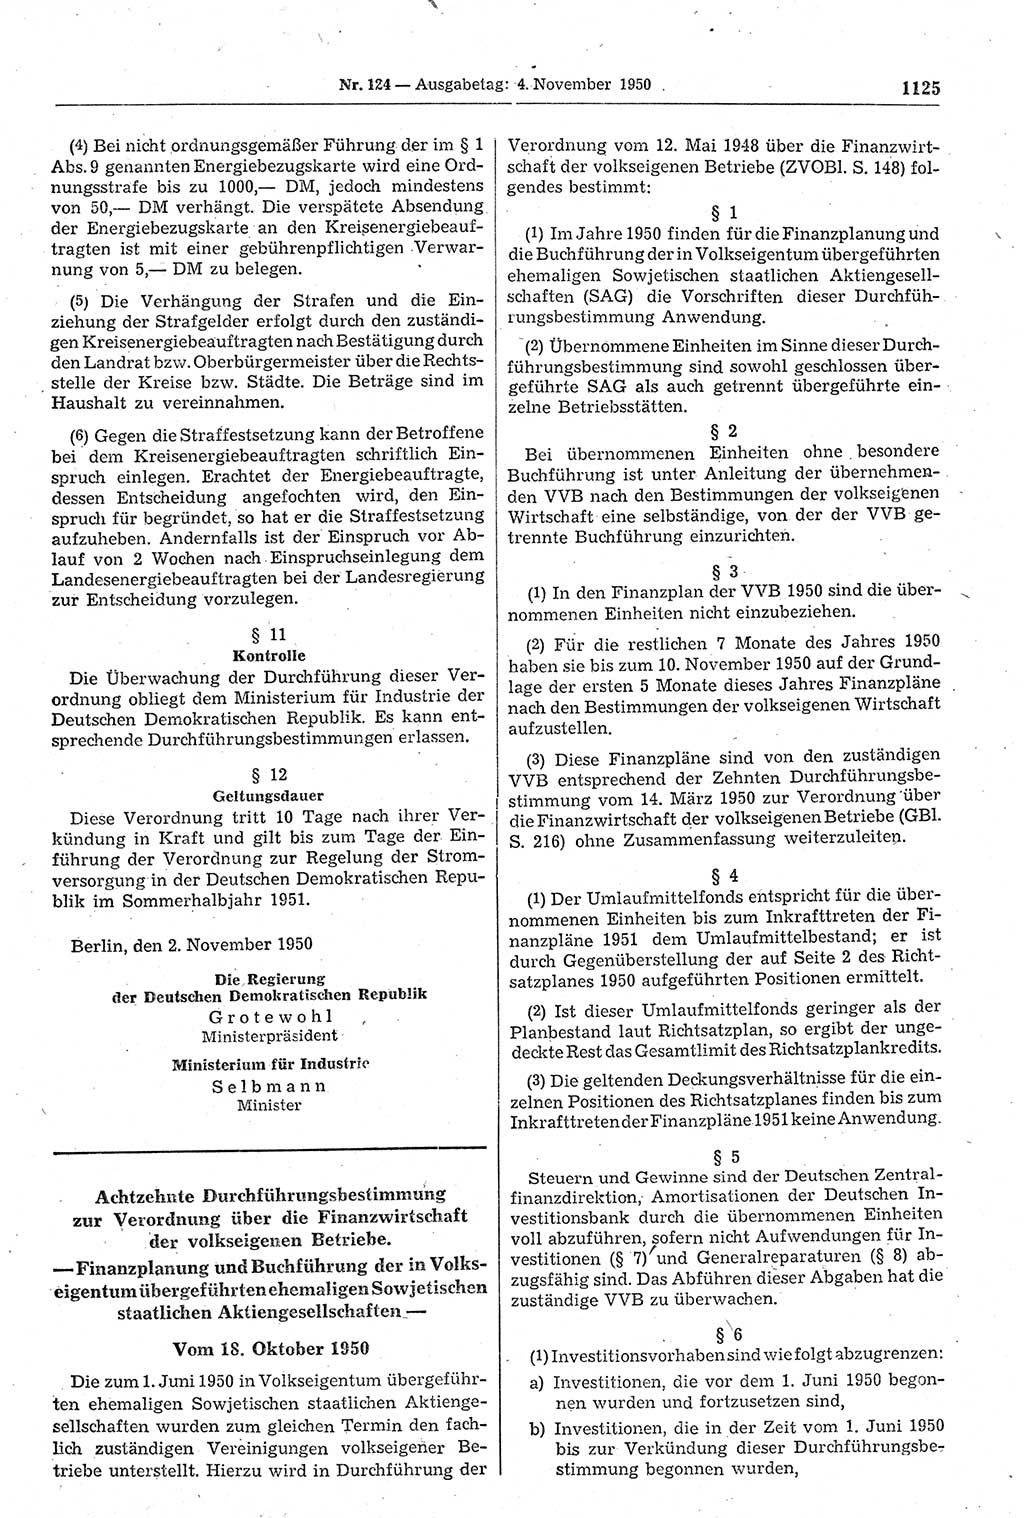 Gesetzblatt (GBl.) der Deutschen Demokratischen Republik (DDR) 1950, Seite 1125 (GBl. DDR 1950, S. 1125)